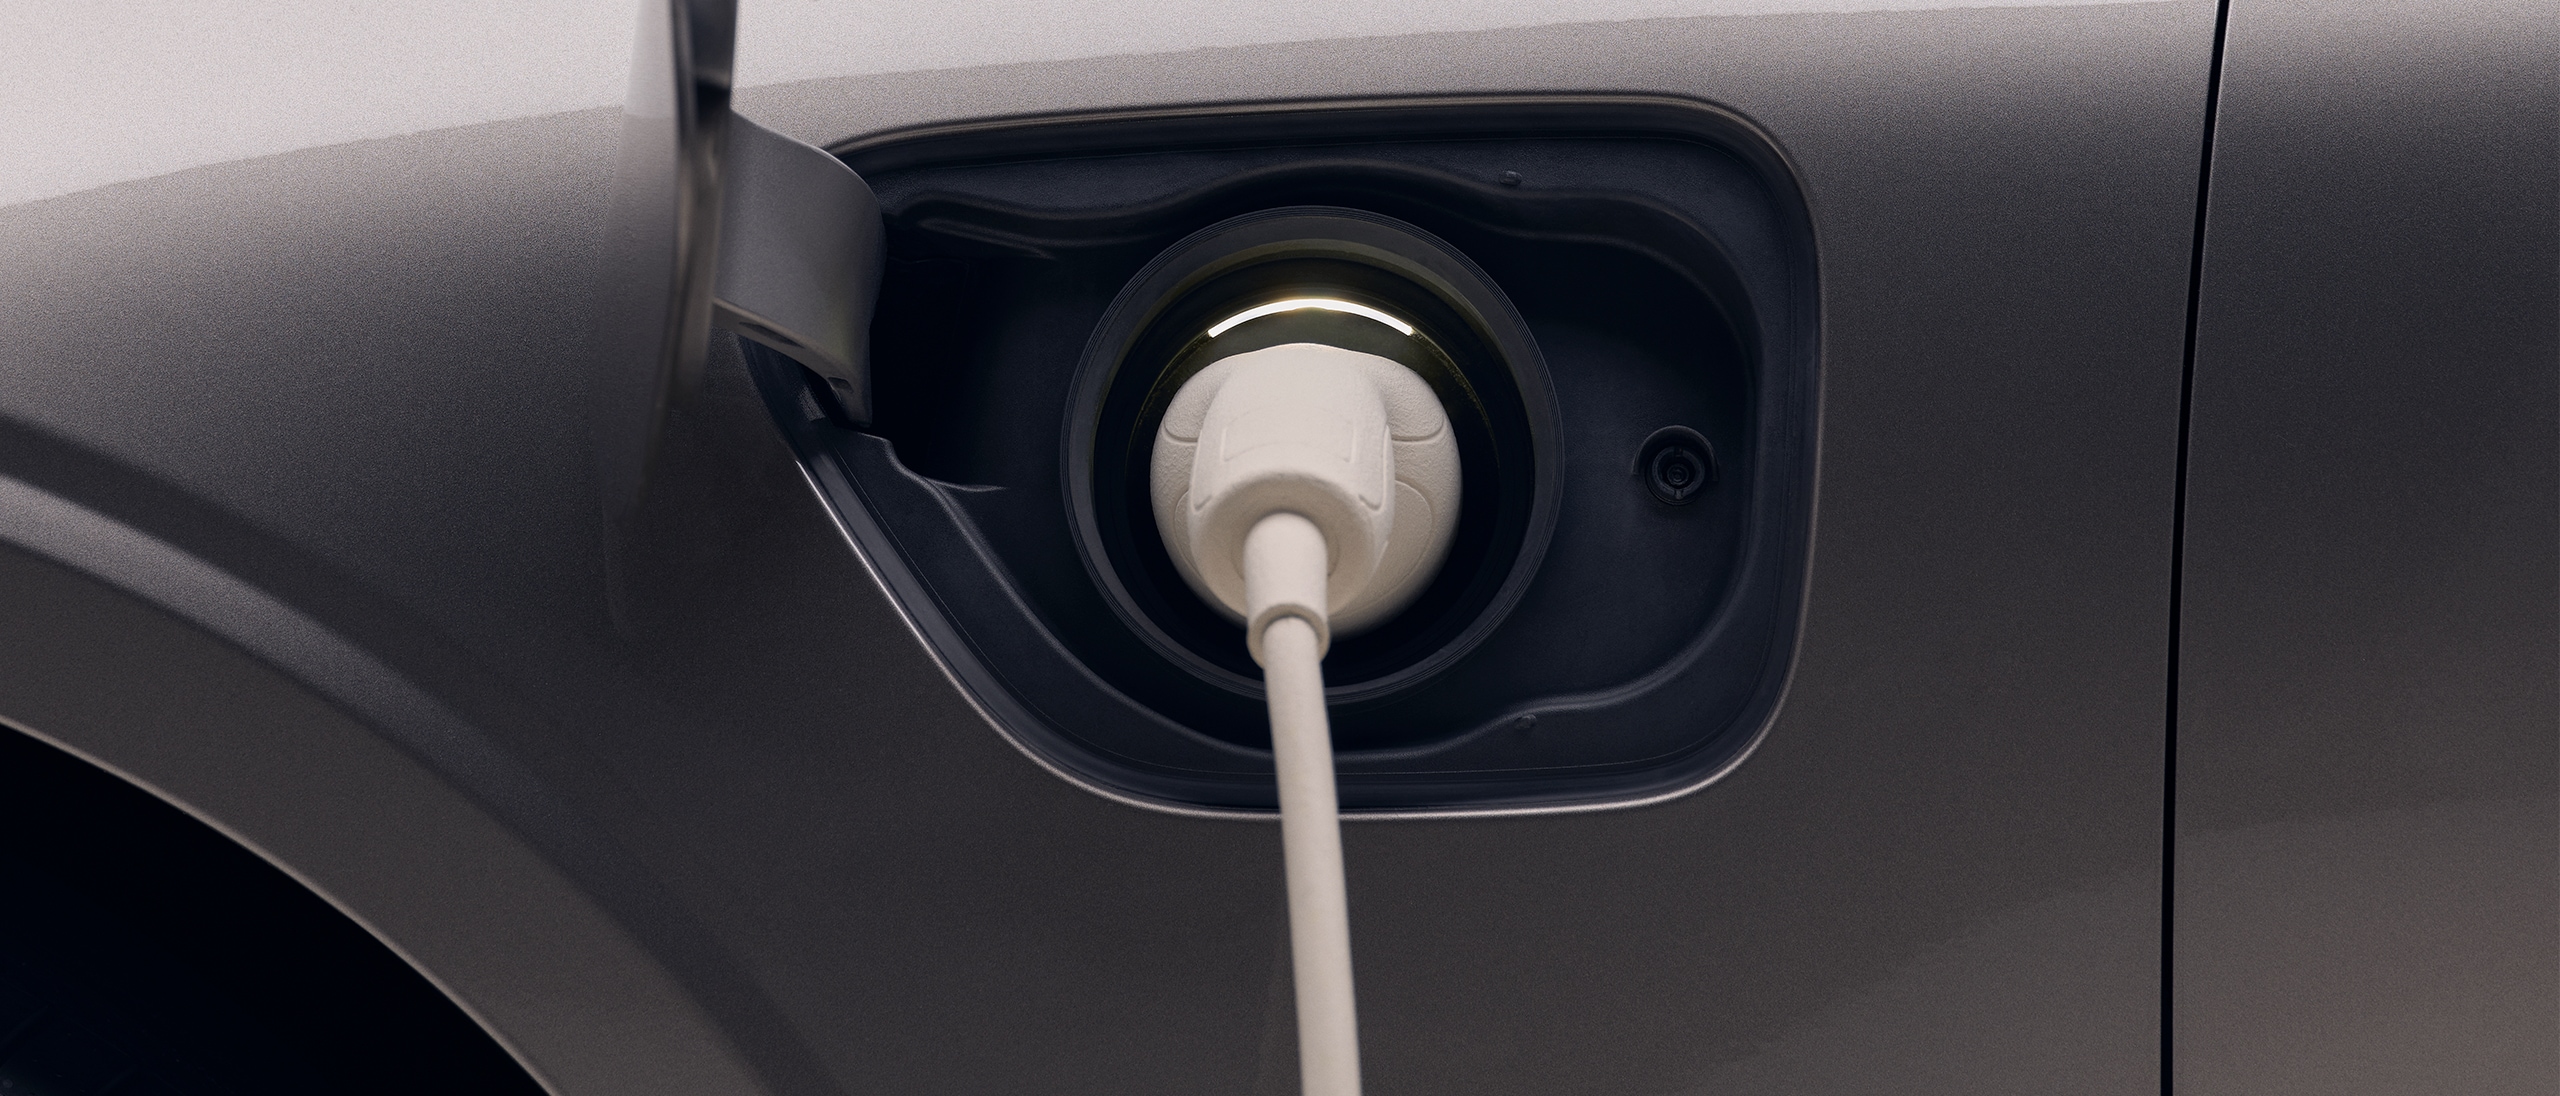 Krupni plan prednje lijeve četvrtine novog tamnosivog Volvo električnog automobila s bijelim kablom za punjenje priključenim u priključak za punjenje automobila.